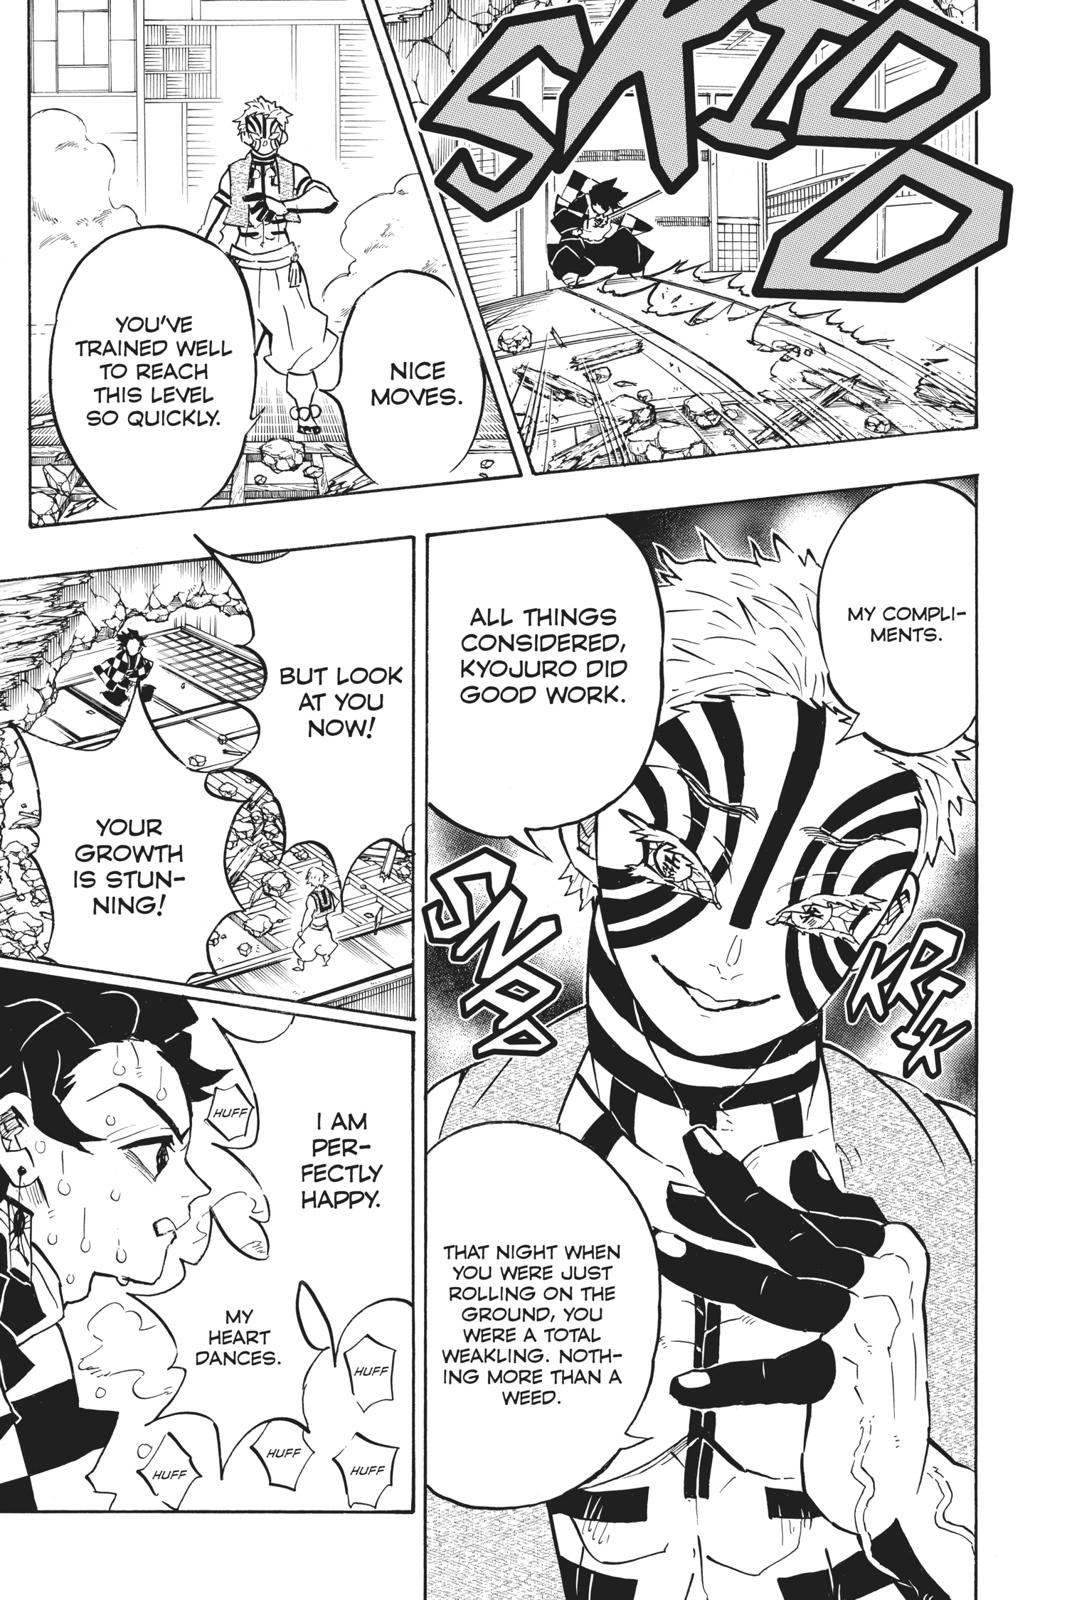 Demon Slayer Manga Manga Chapter - 148 - image 6